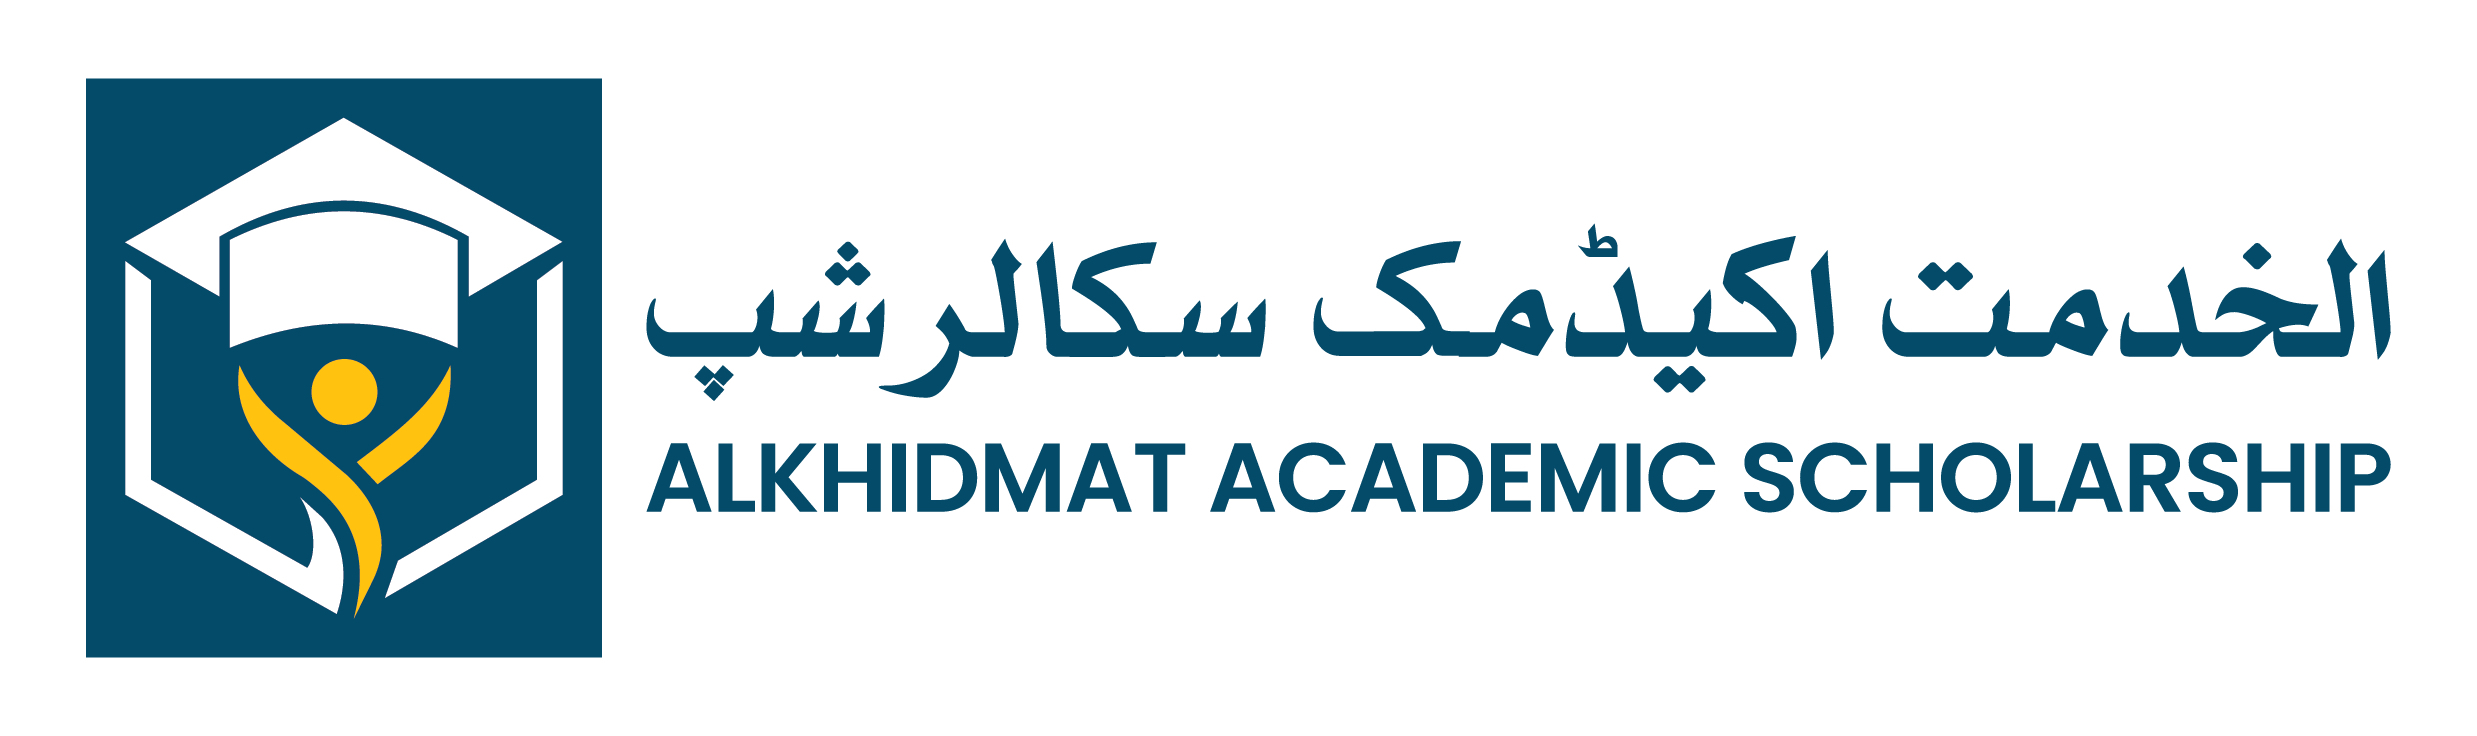 Alkhidmat Academic Scholarship Logo